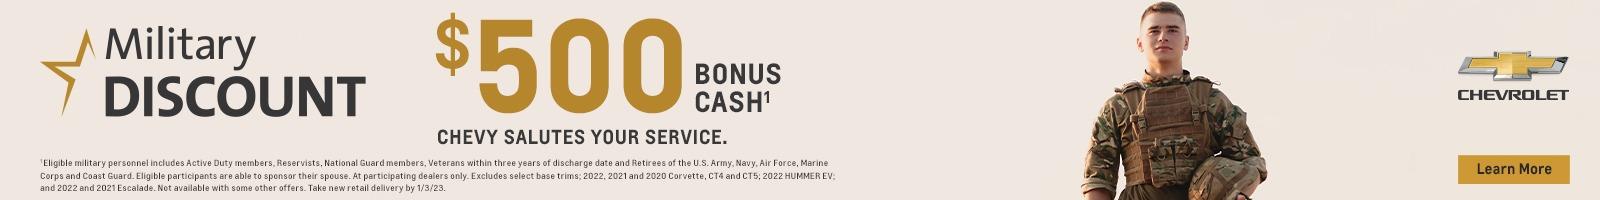 Military Discount. $500 bonus cash.